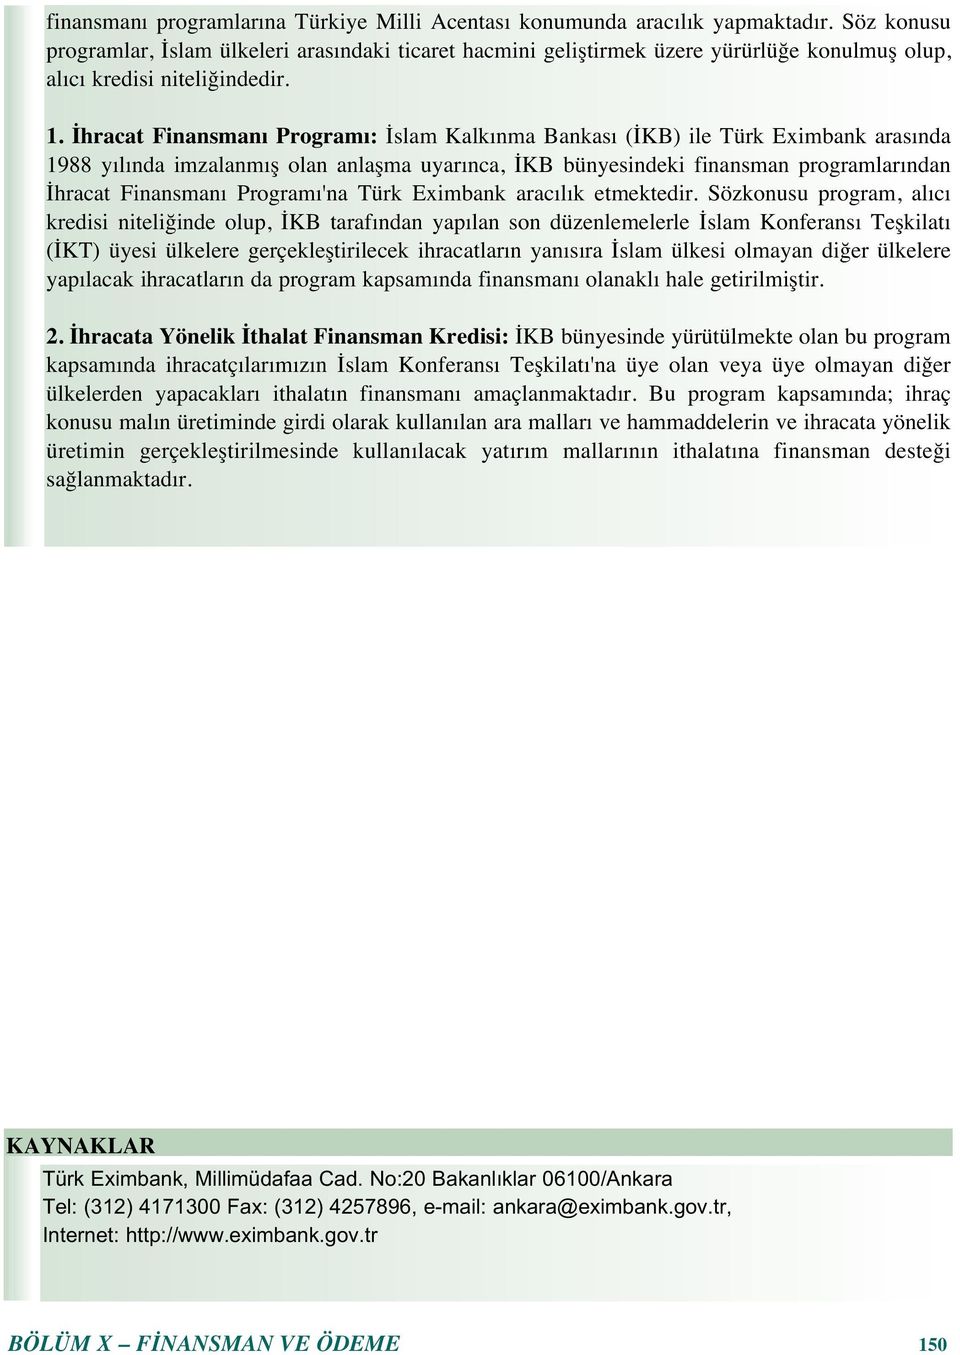 İhracat Finansman Program : İslam Kalk nma Bankas (İKB) ile Türk Eximbank aras nda 1988 y l nda imzalanm ş olan anlaşma uyar nca, İKB bünyesindeki finansman programlar ndan İhracat Finansman Program